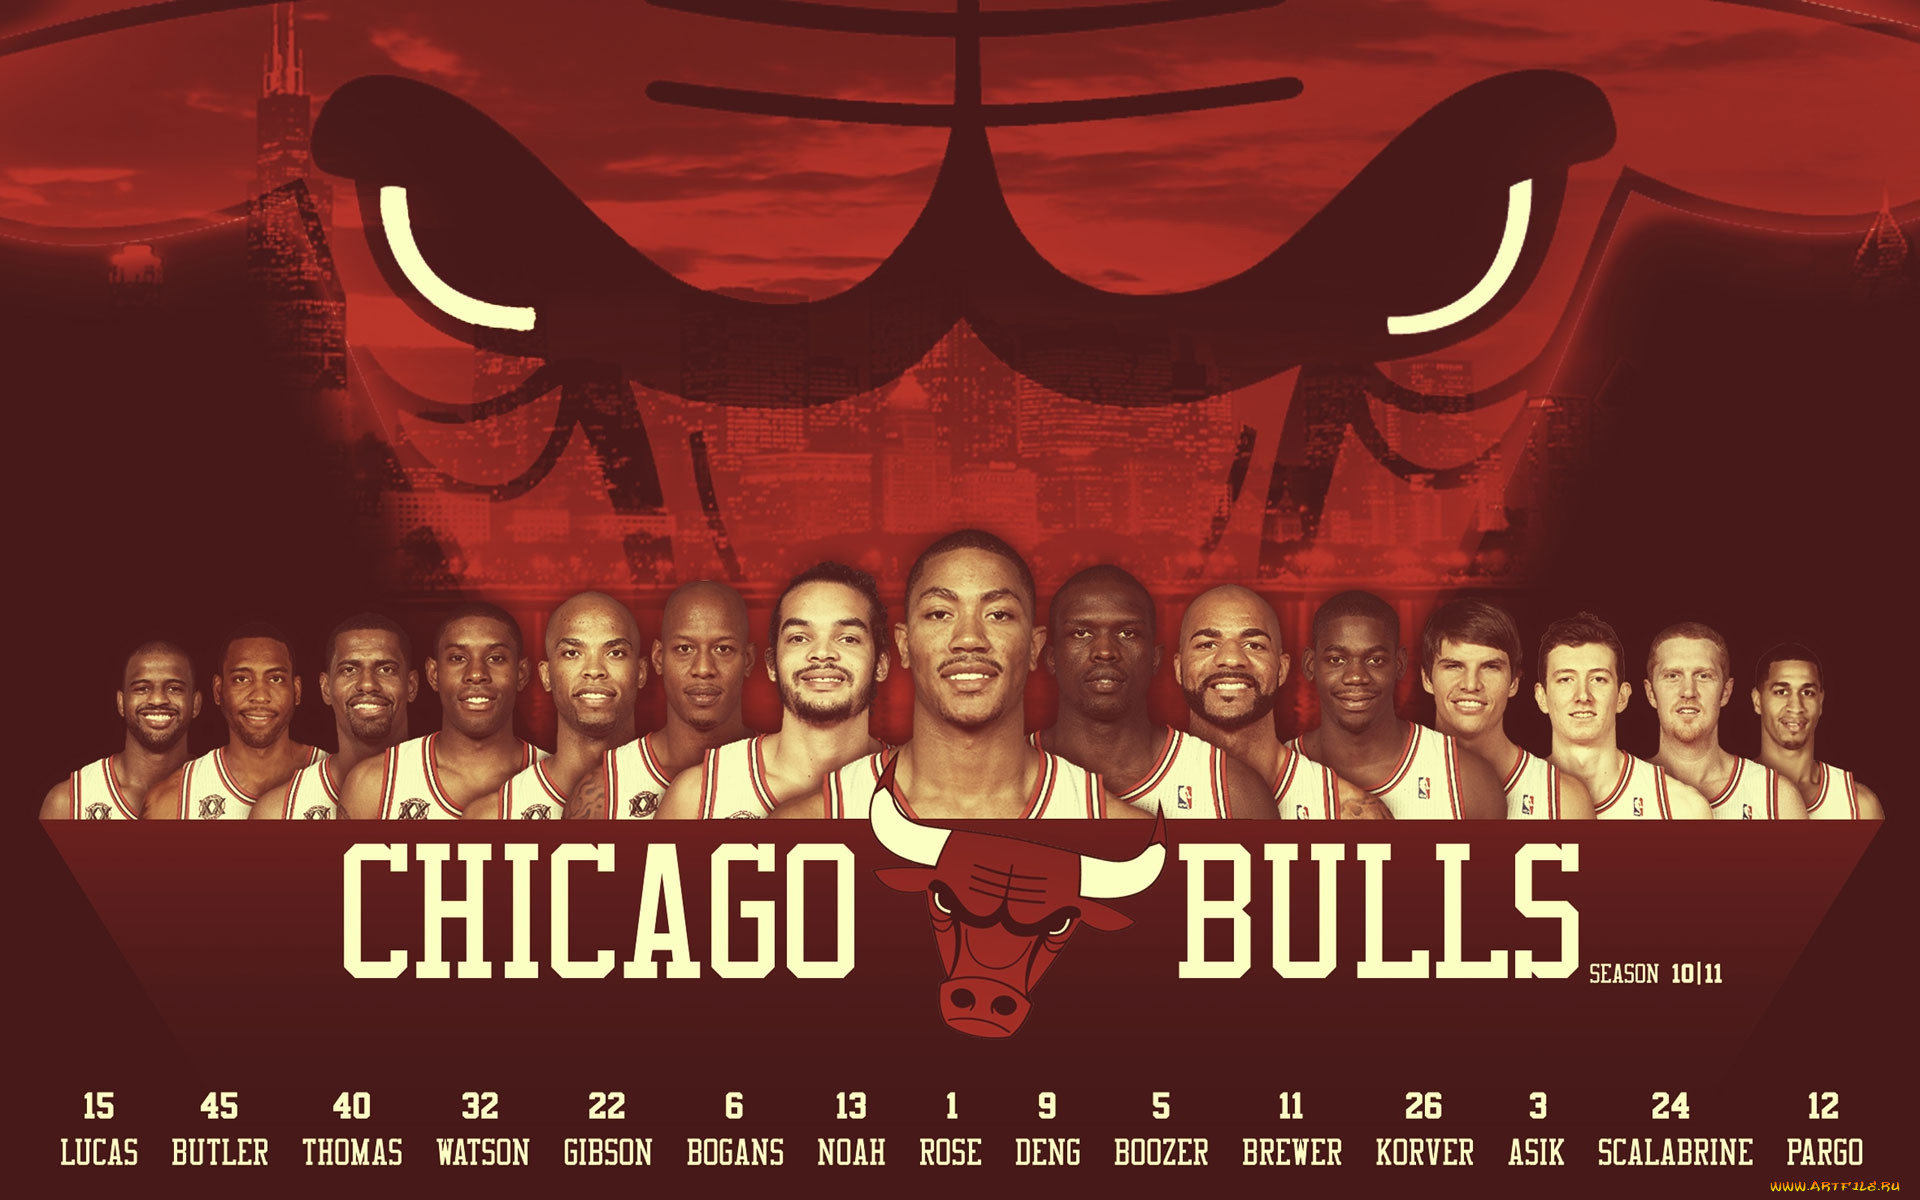 Обои Chicago Bulls 2010-11 Спорт NBA, обои для рабочего стола, фотографии  chicago, bulls, 2010, 11, спорт, nba, 2010-11, клуб, нба Обои для рабочего  стола, скачать обои картинки заставки на рабочий стол.